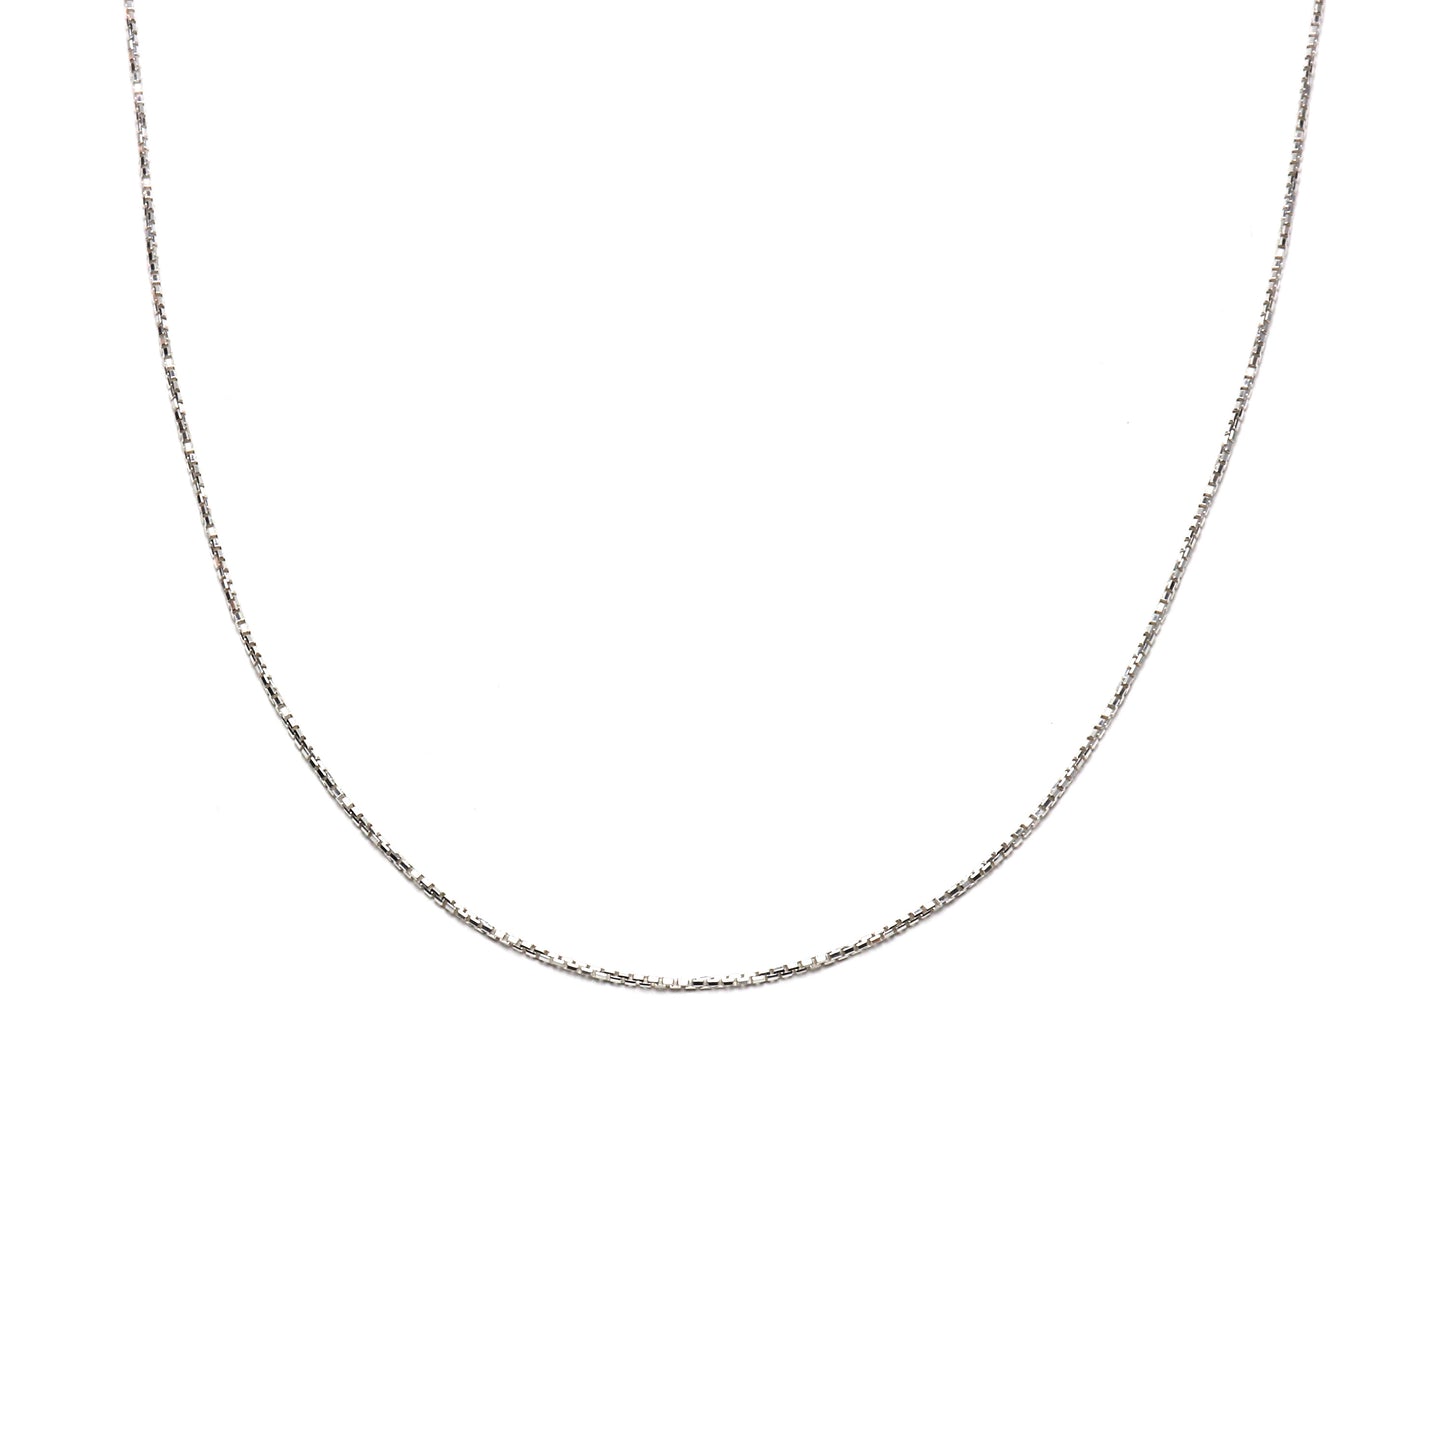 Cala necklace - Silver